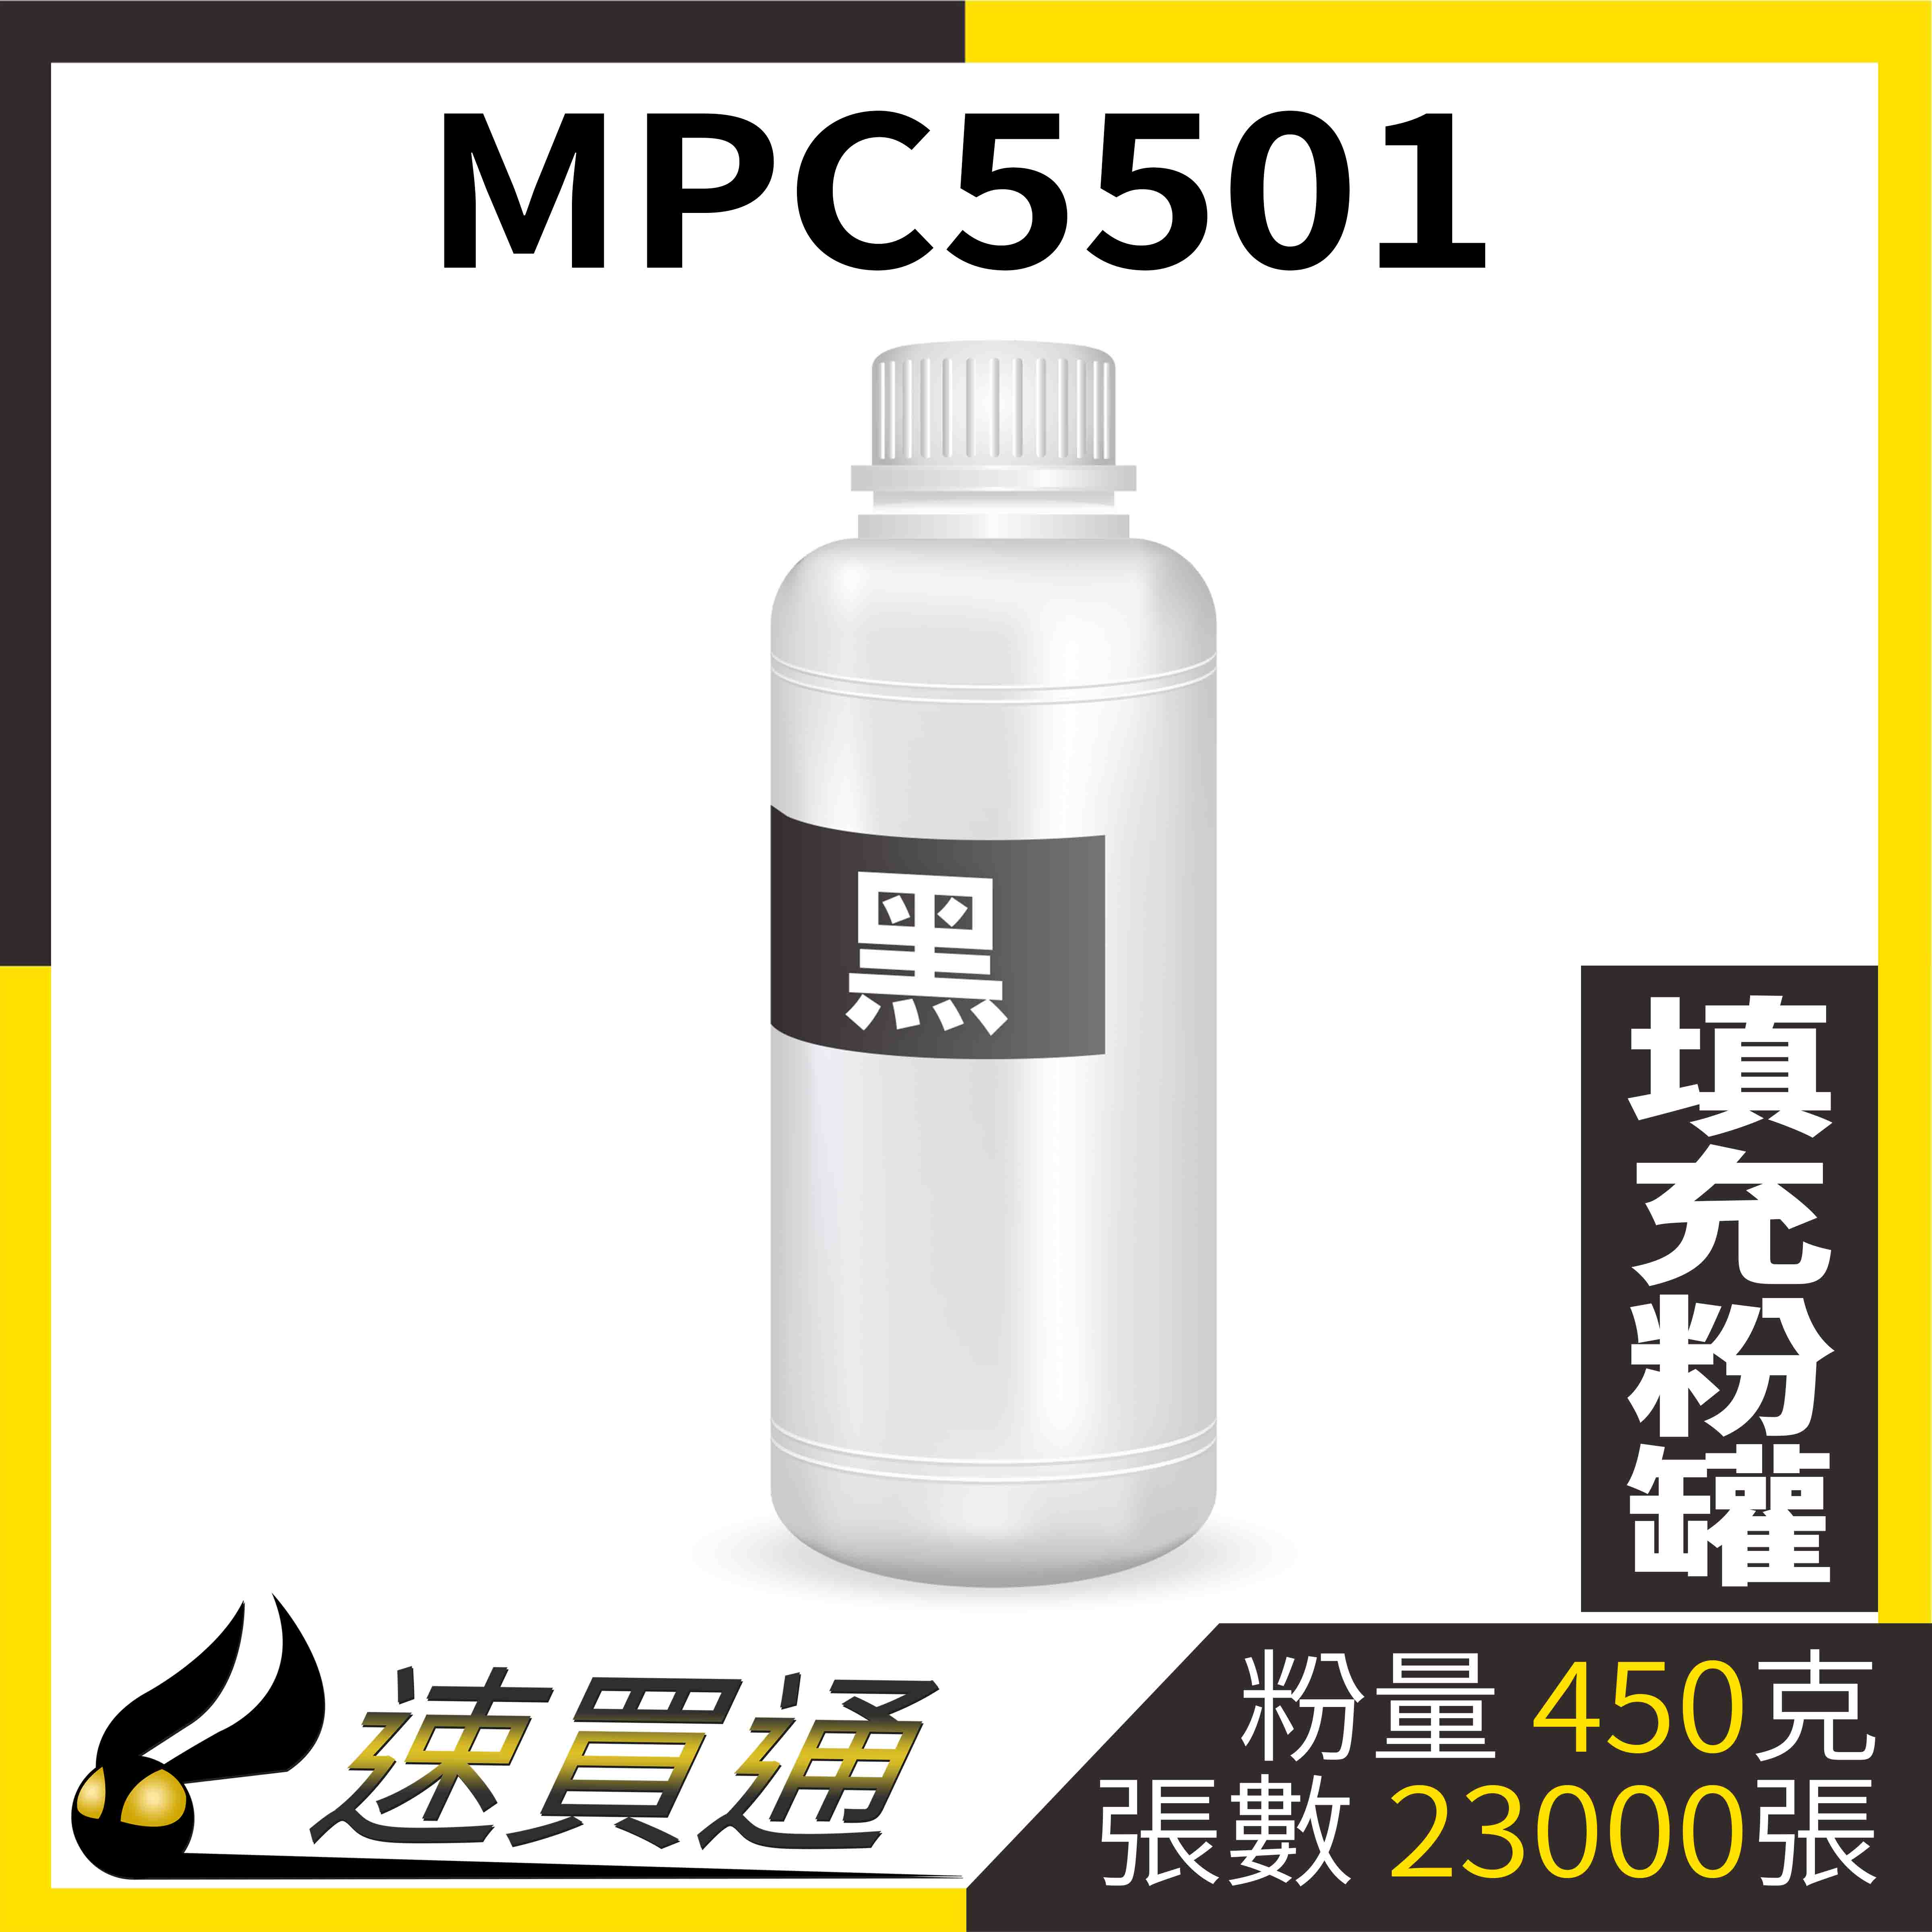 【速買通】RICOH MPC5501 黑 填充式碳粉罐